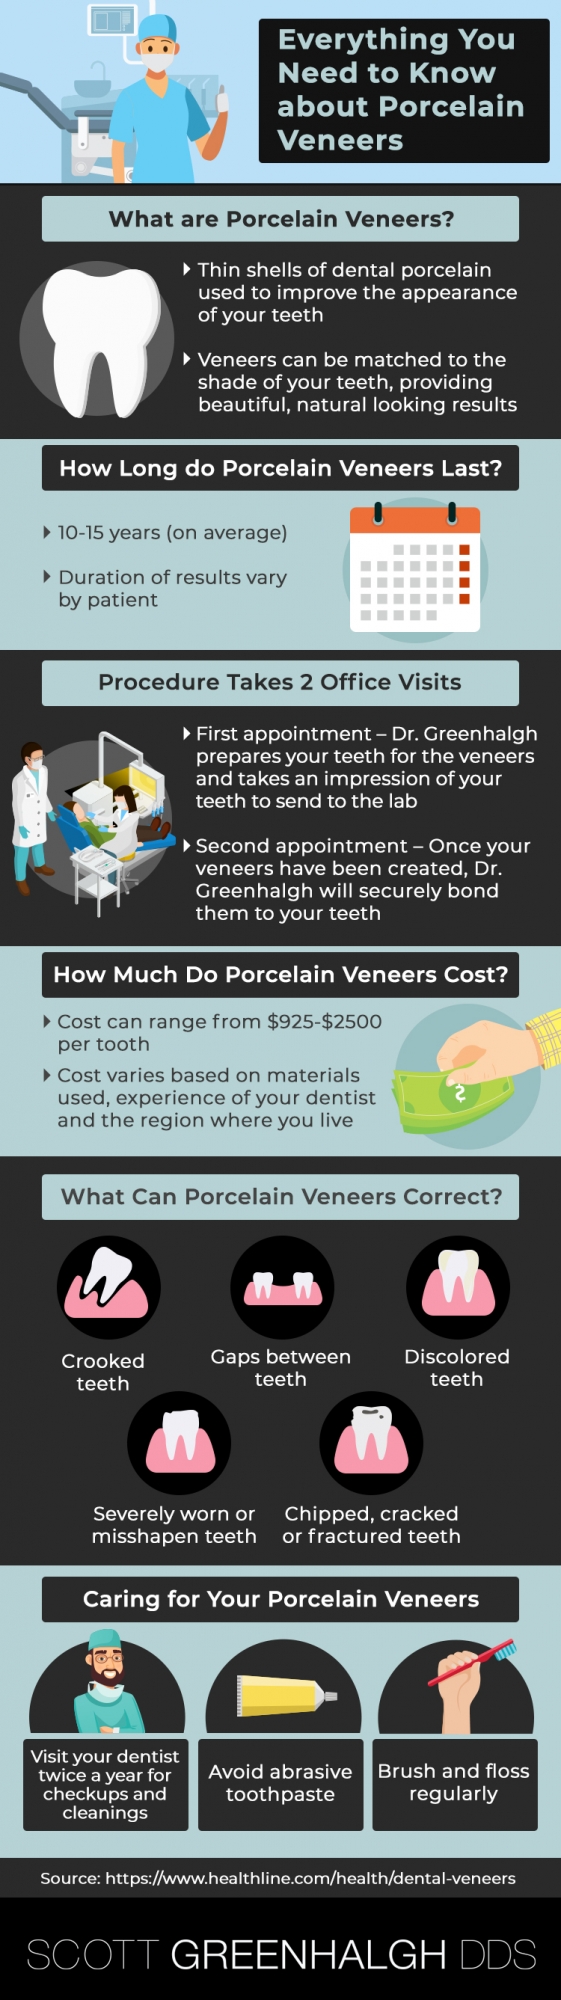 porcelain veneers overview infographic